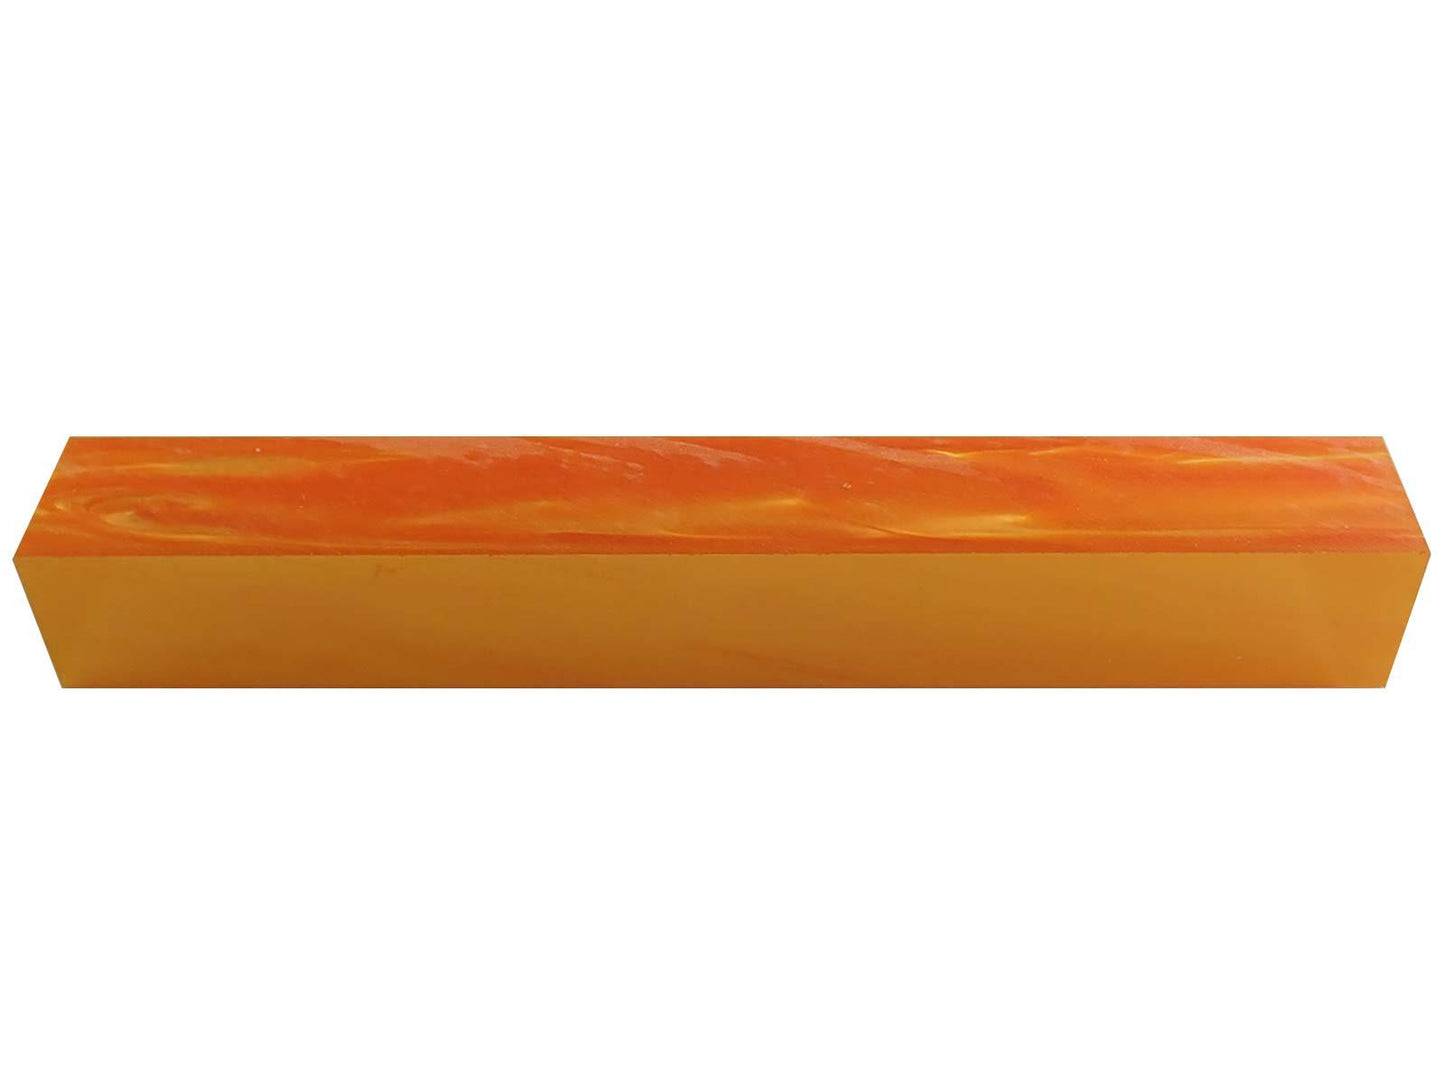 Turners' Mill Orange Pearl Kirinite Acrylic Pen Blank - 150x20x20mm (5.9x0.79x0.79"), 6x3/4x3/4"